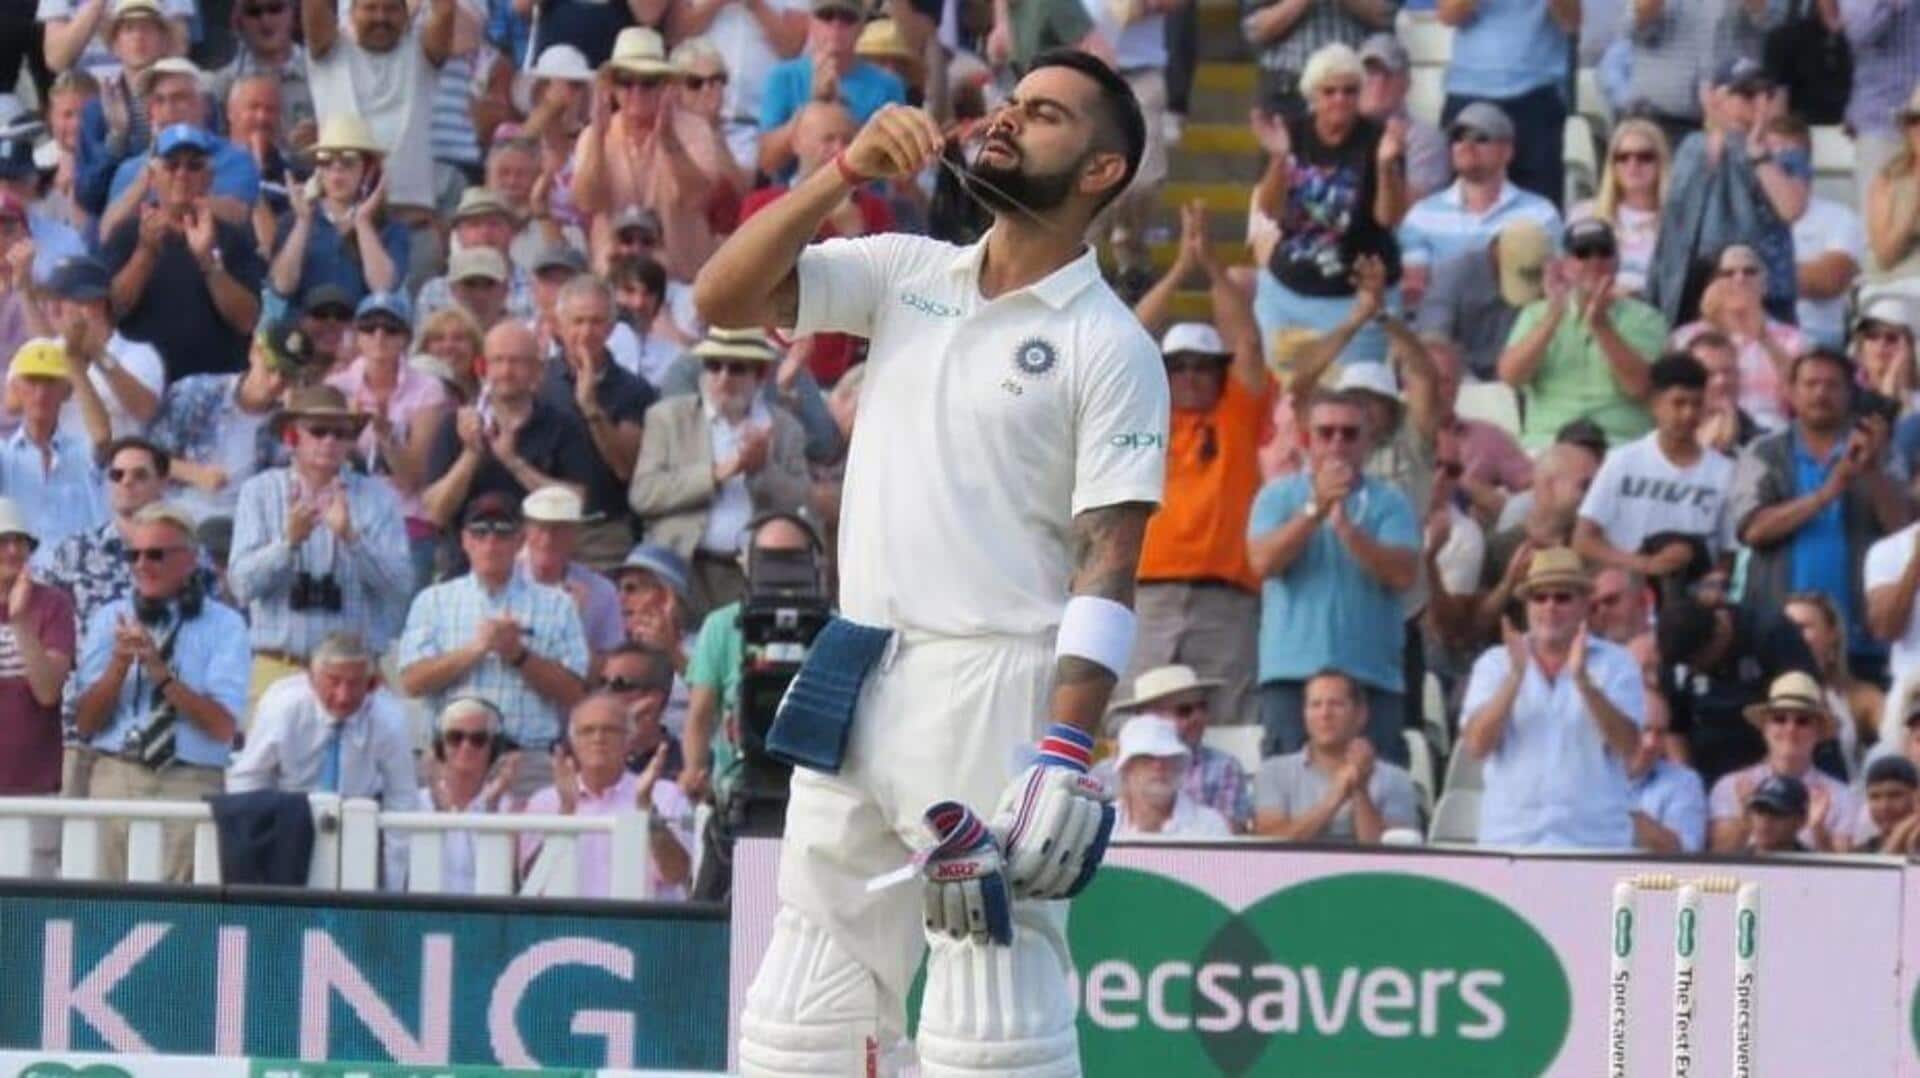 विराट कोहली सेंचुरियन के सुपरस्पोर्ट पार्क में सबसे ज्यादा टेस्ट रन बनाने वाले मेहमान बल्लेबाज बने